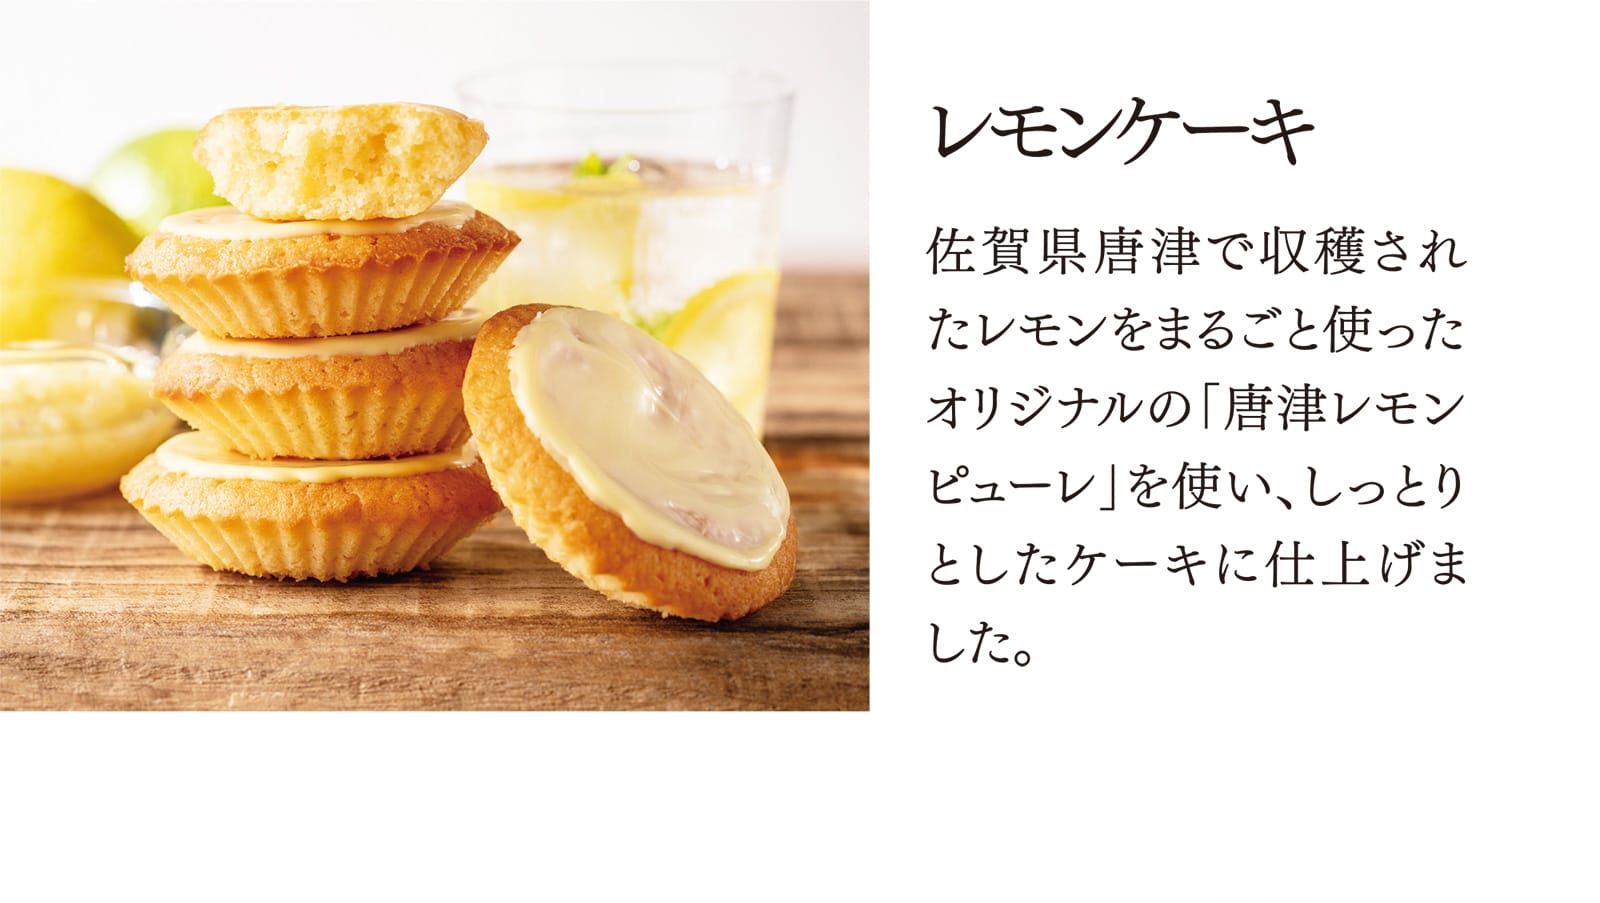 【レモンケーキ】佐賀県唐津で収穫されたレモンをまるごと使ったオリジナルの「唐津レモンピューレ」を使い、しっとりとしたケーキに仕上げました。